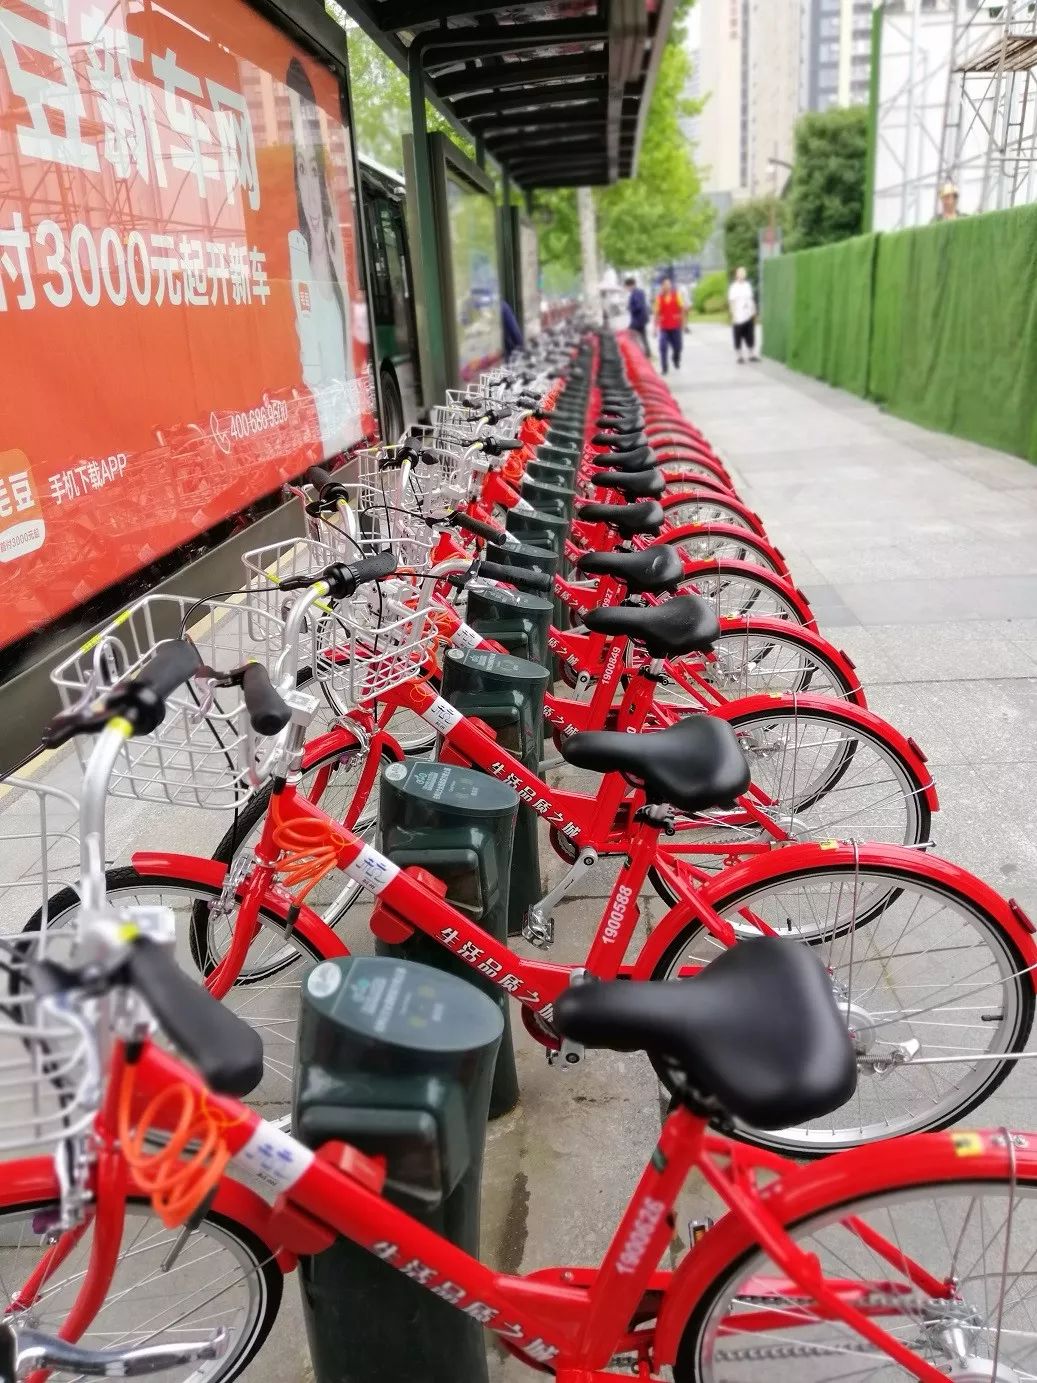 除了加大新车的投用力度外,钱塘新区城管局还要求杭州市公共自行车